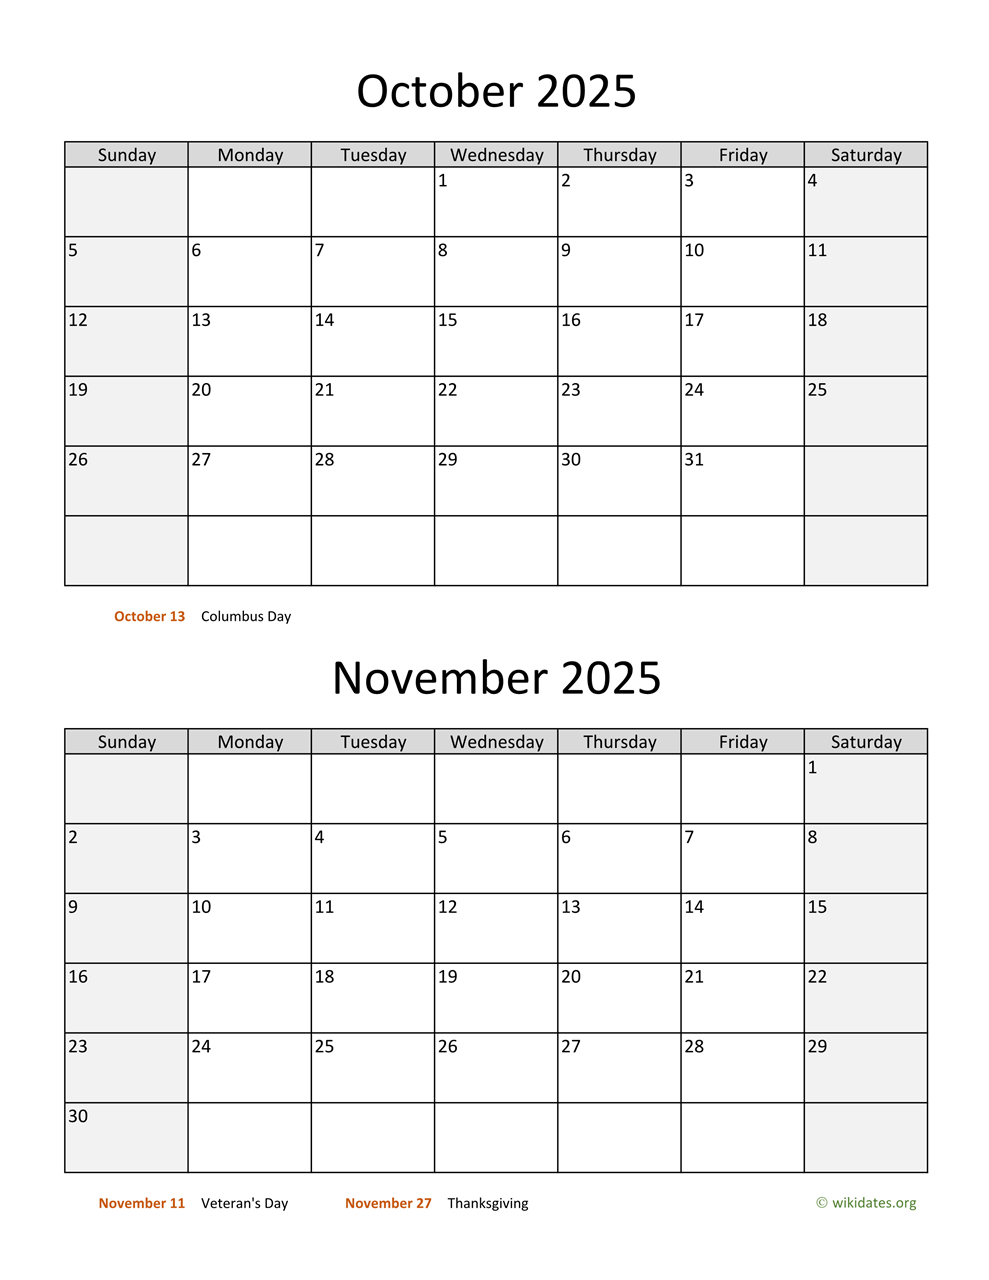 october-and-november-2025-calendar-wikidates